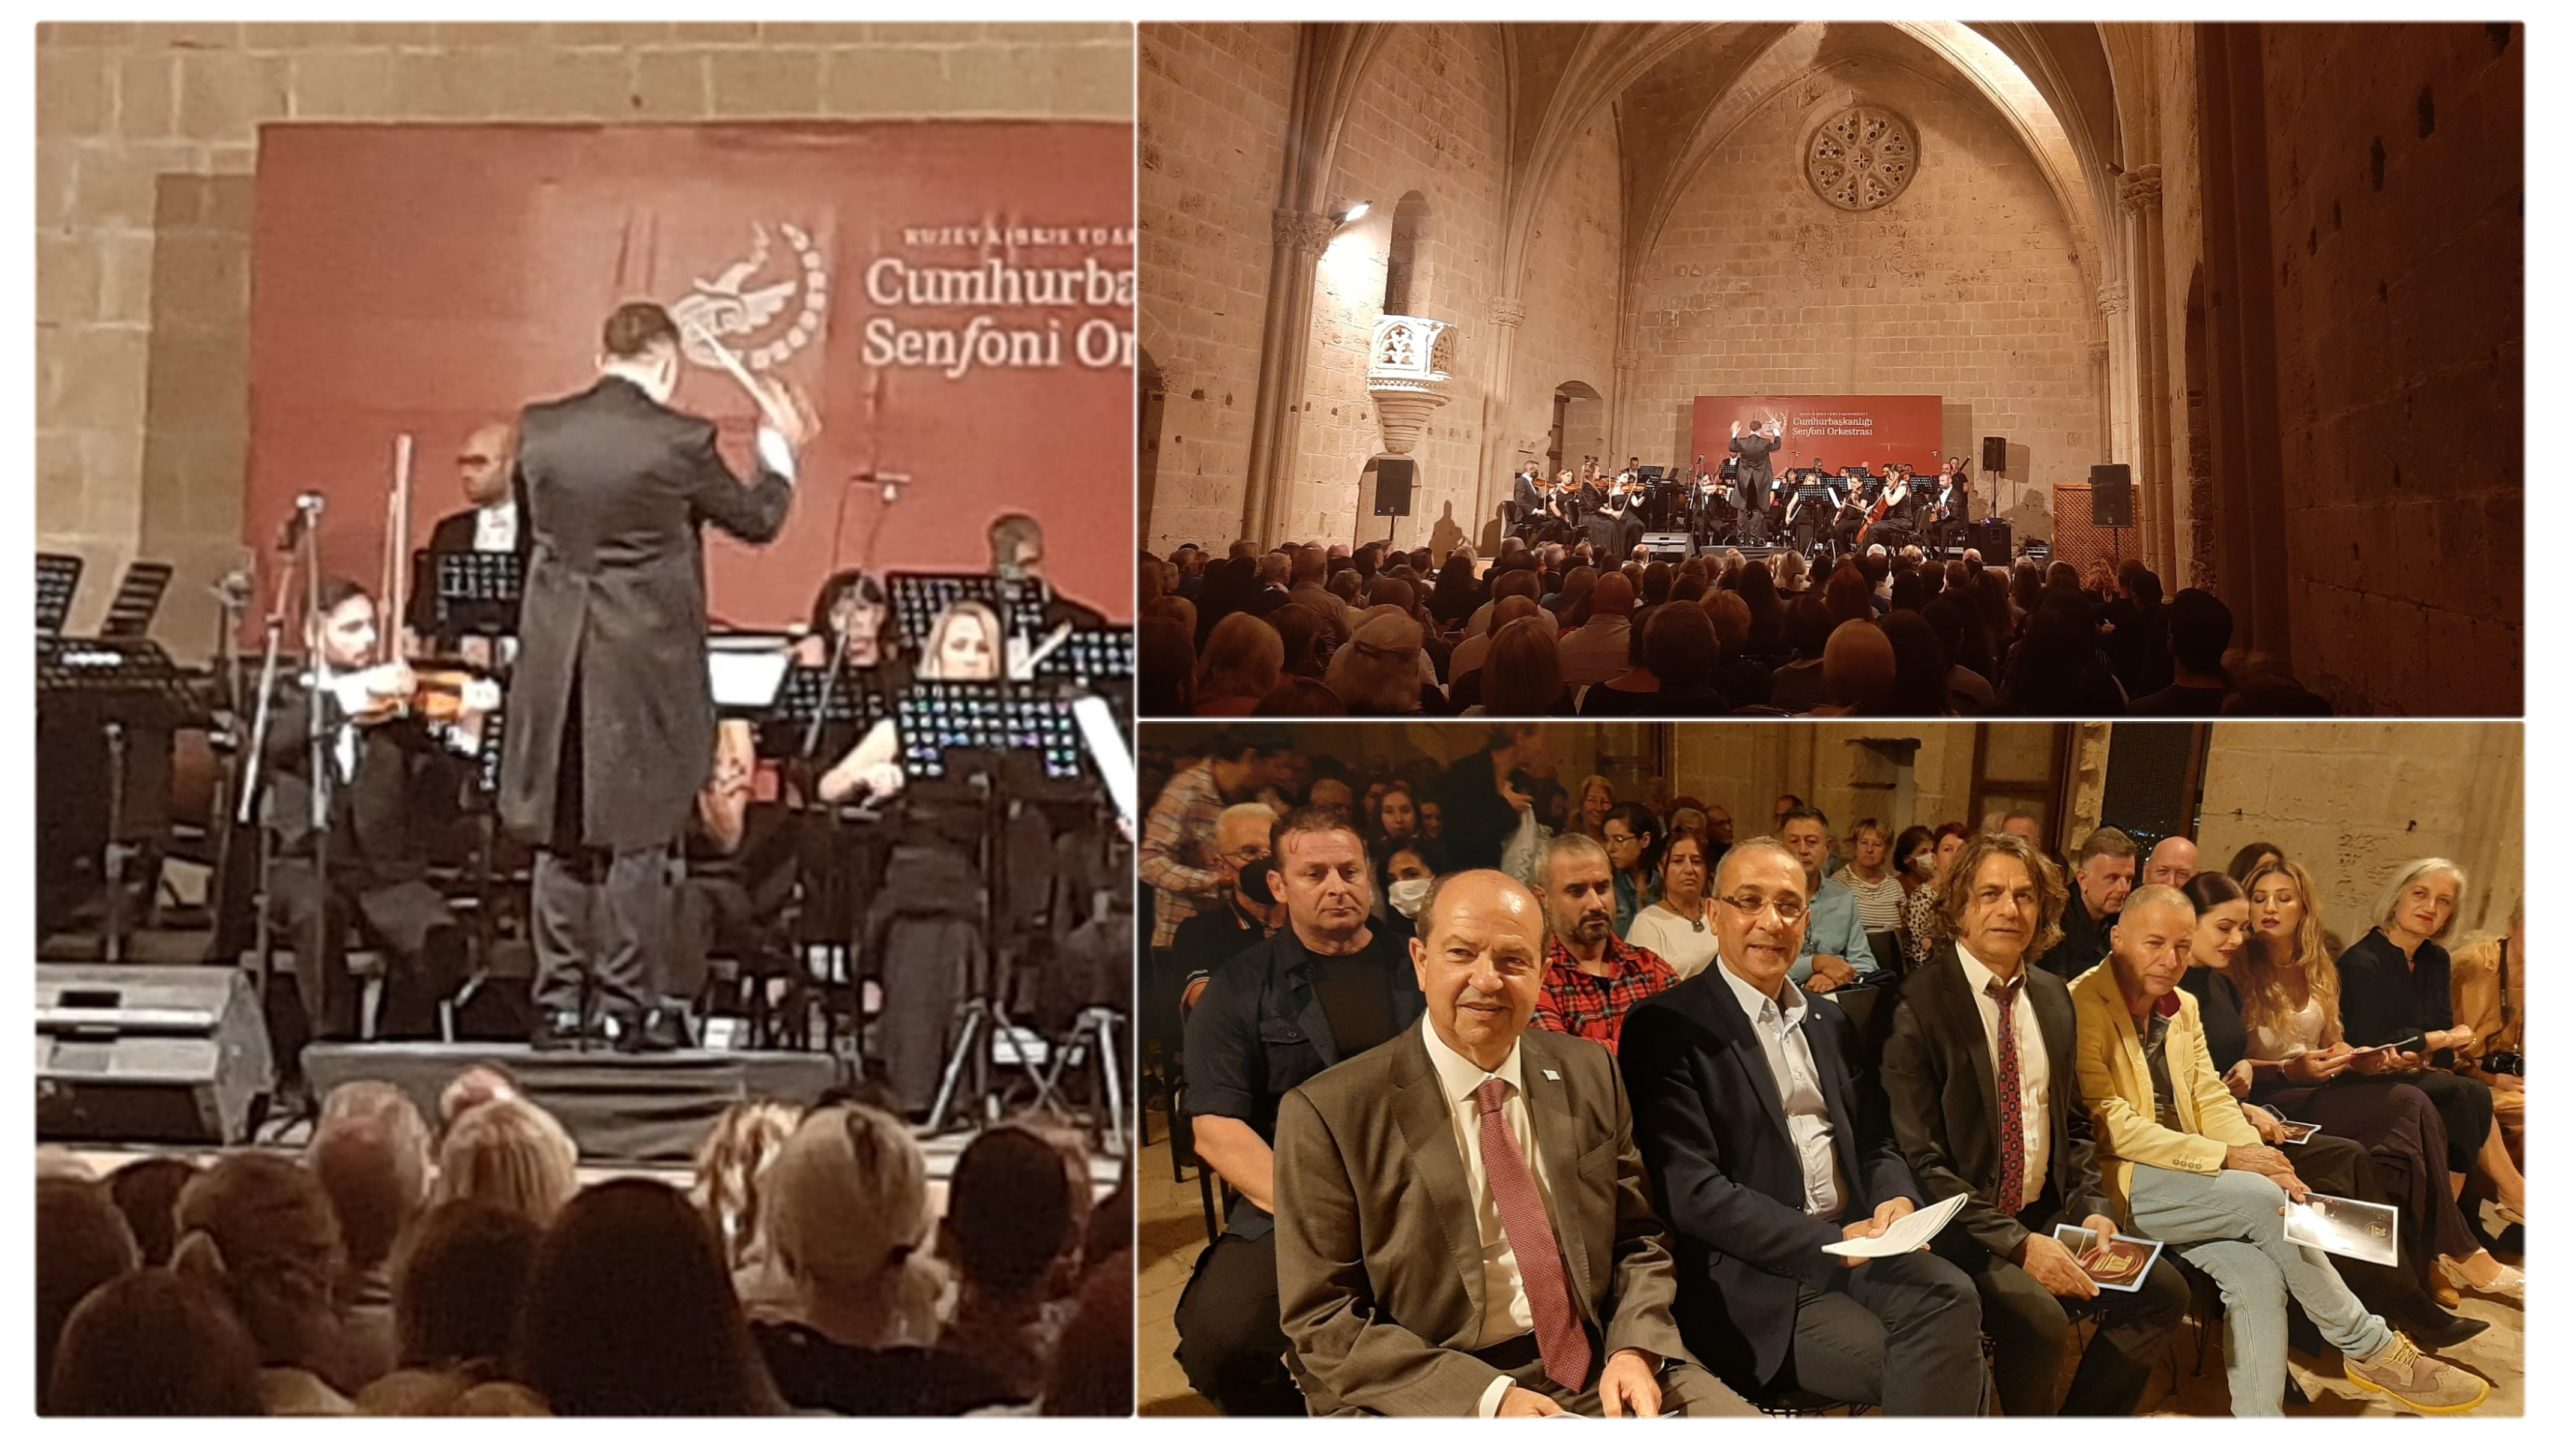 Kuzey Kıbrıs Müzik Festivali, Burcu Durmaz ve Cumhurbaşkanlığı Senfoni Orkestrasının konseriyle sona erdi